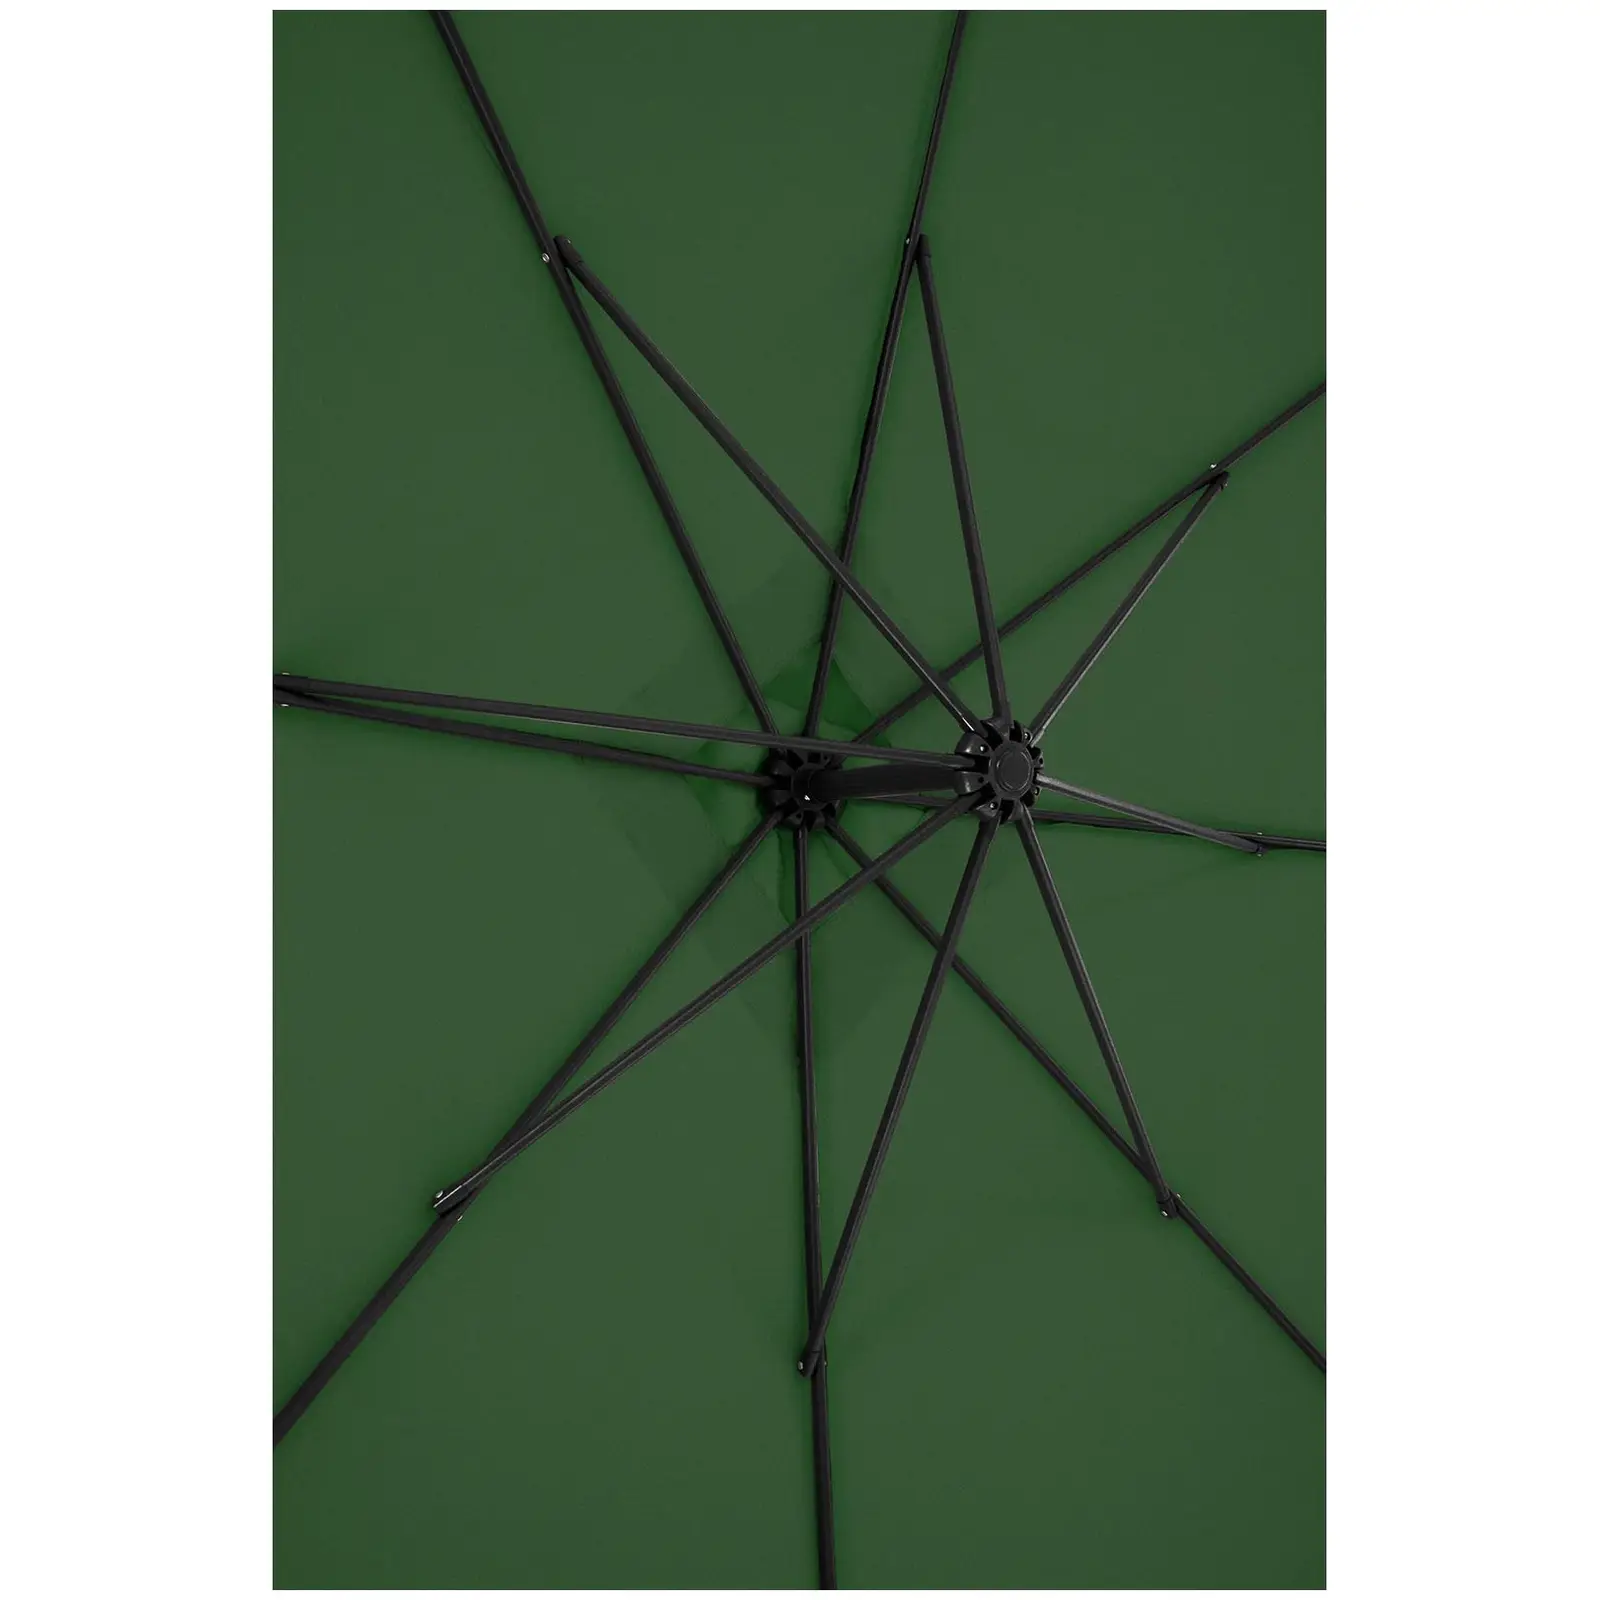 Ampelschirm - Grün - viereckig - 250 x 250 cm - neigbar